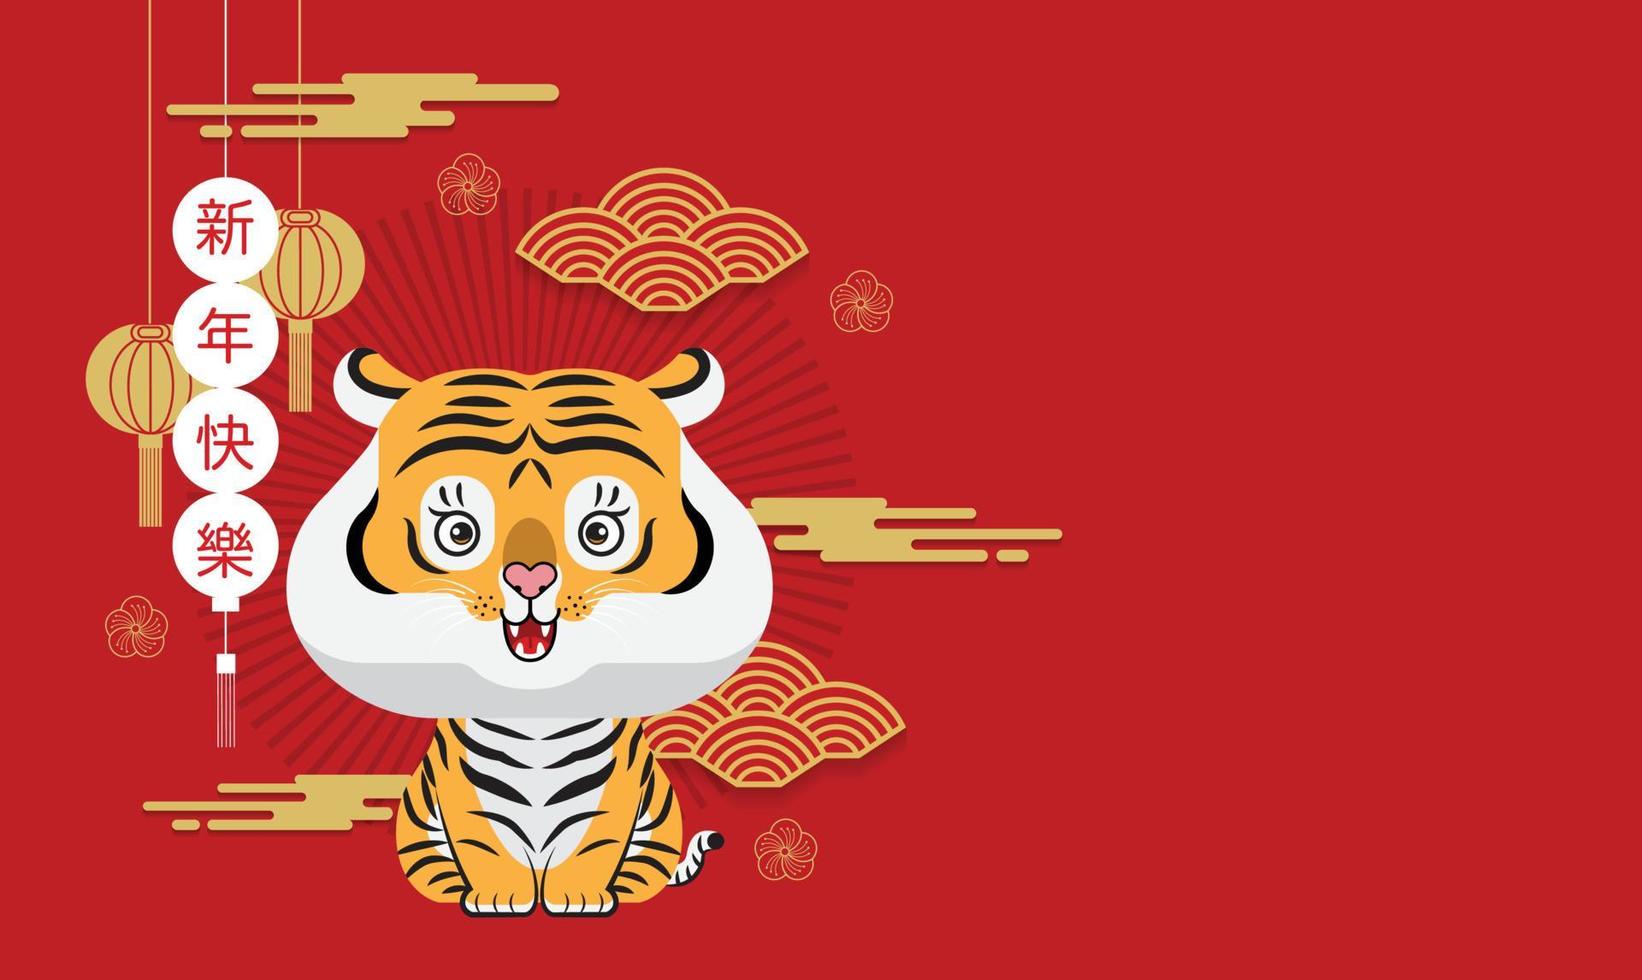 ano novo chinês, 2022, ano do tigre, personagem de desenho animado, design plano fofo vetor